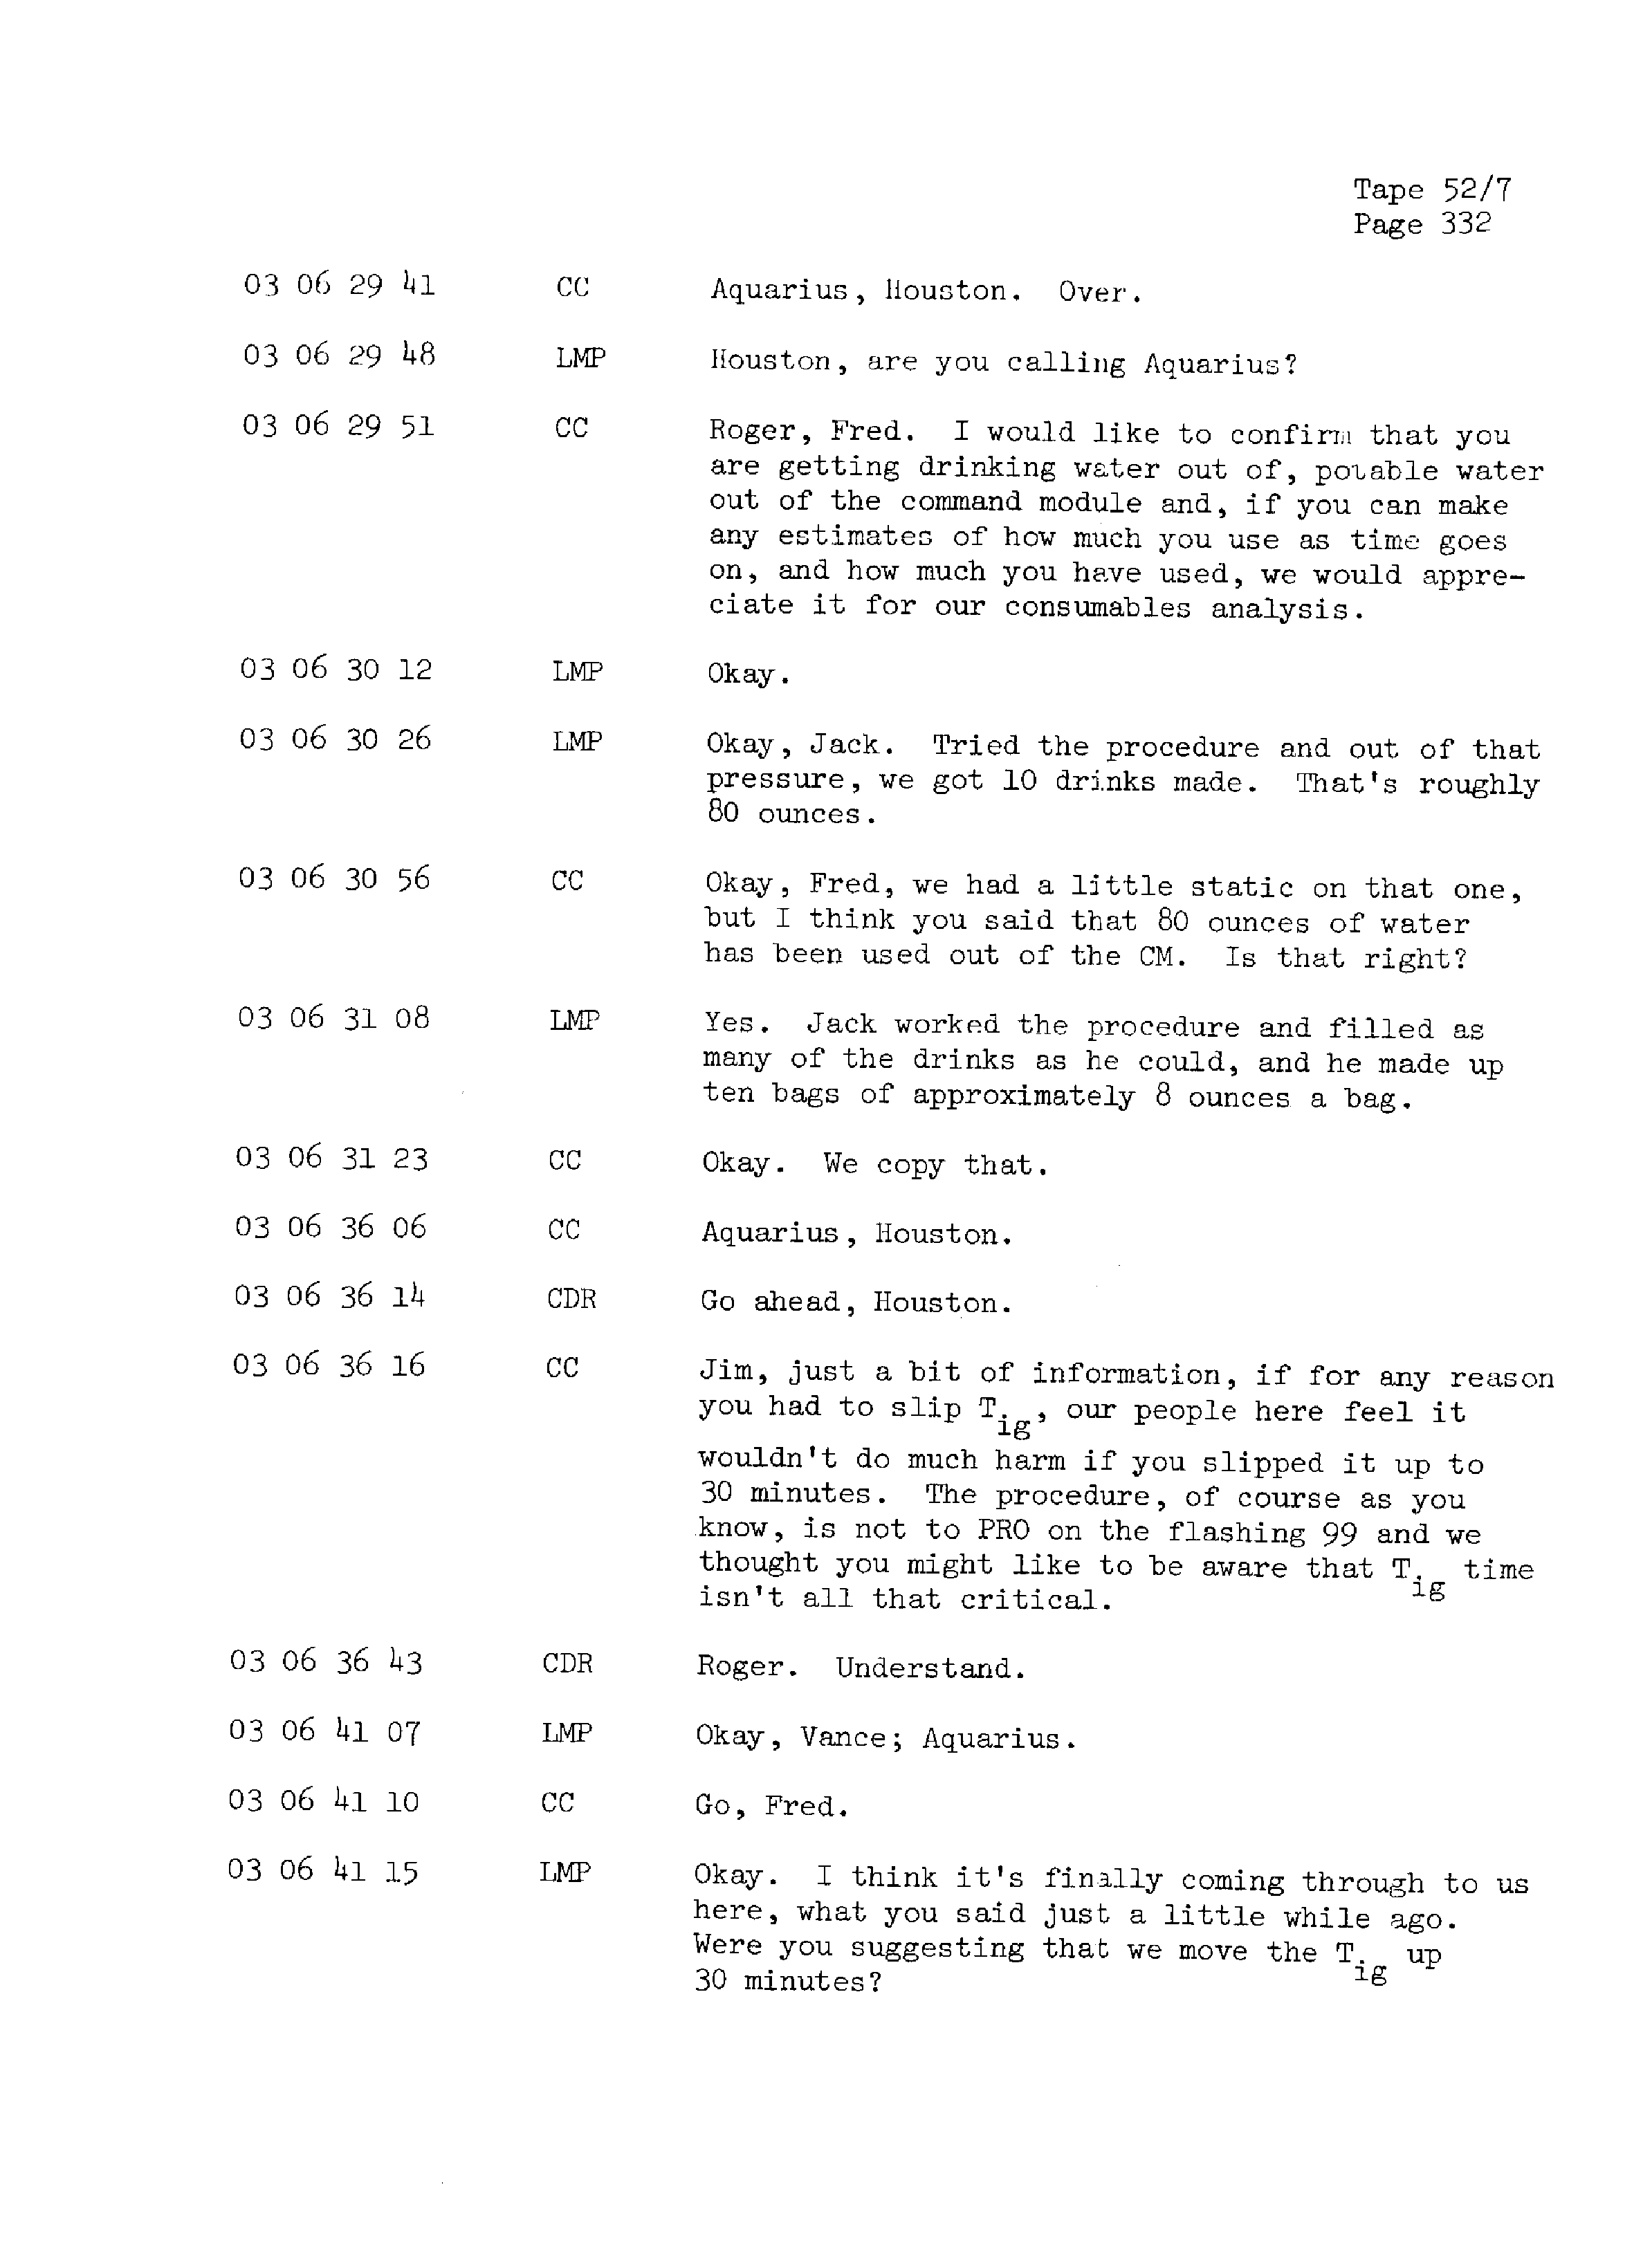 Page 339 of Apollo 13’s original transcript